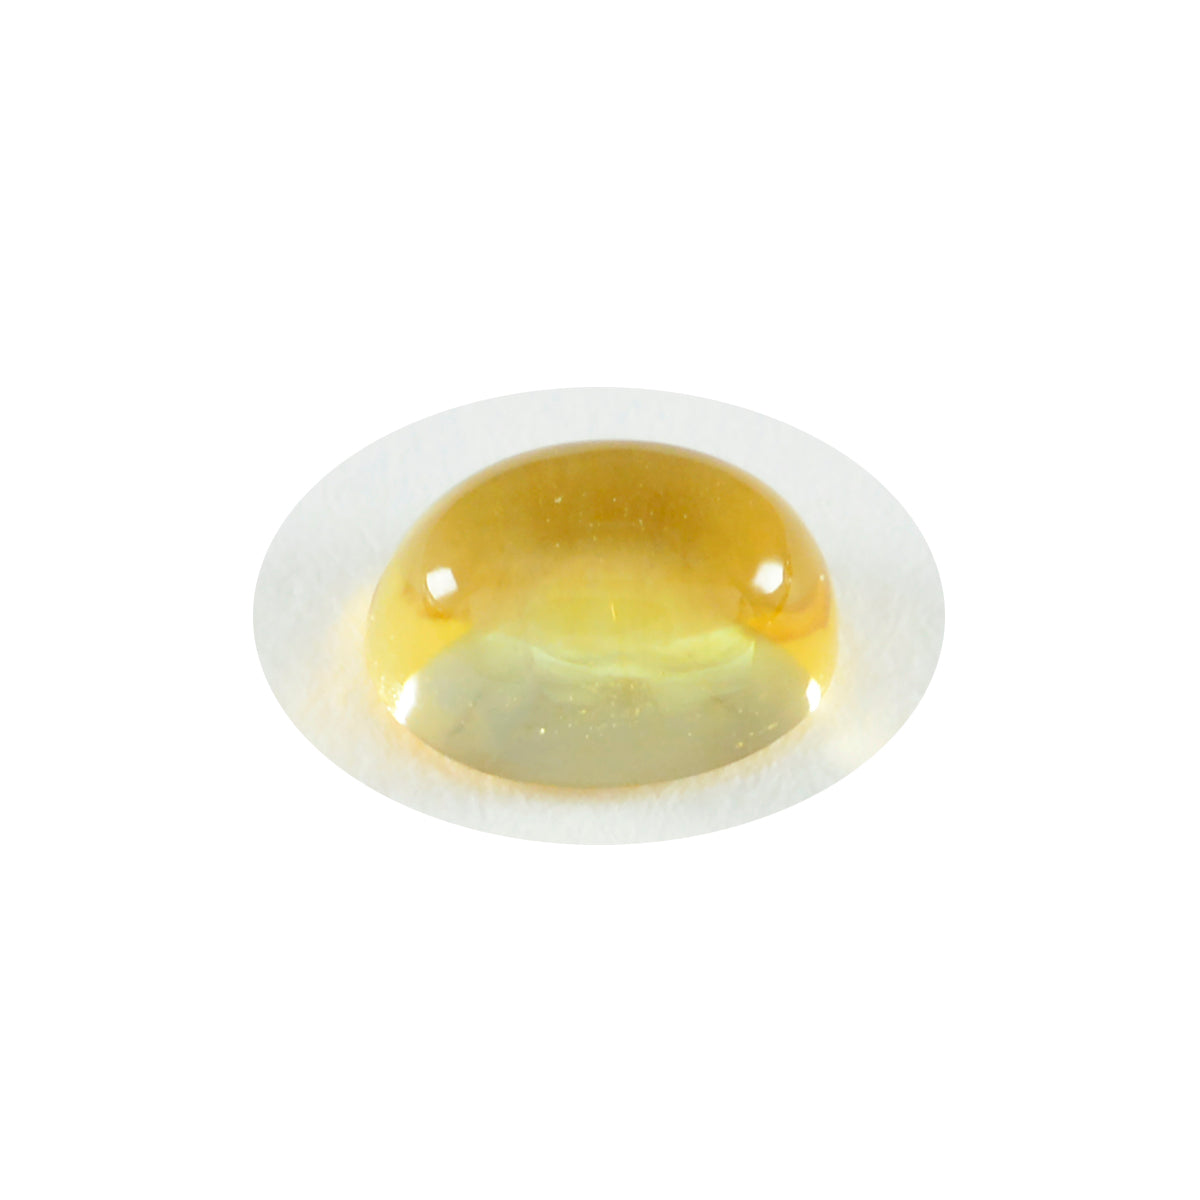 Riyogems 1pc cabochon citrine jaune 12x16mm forme ovale belle qualité pierre en vrac